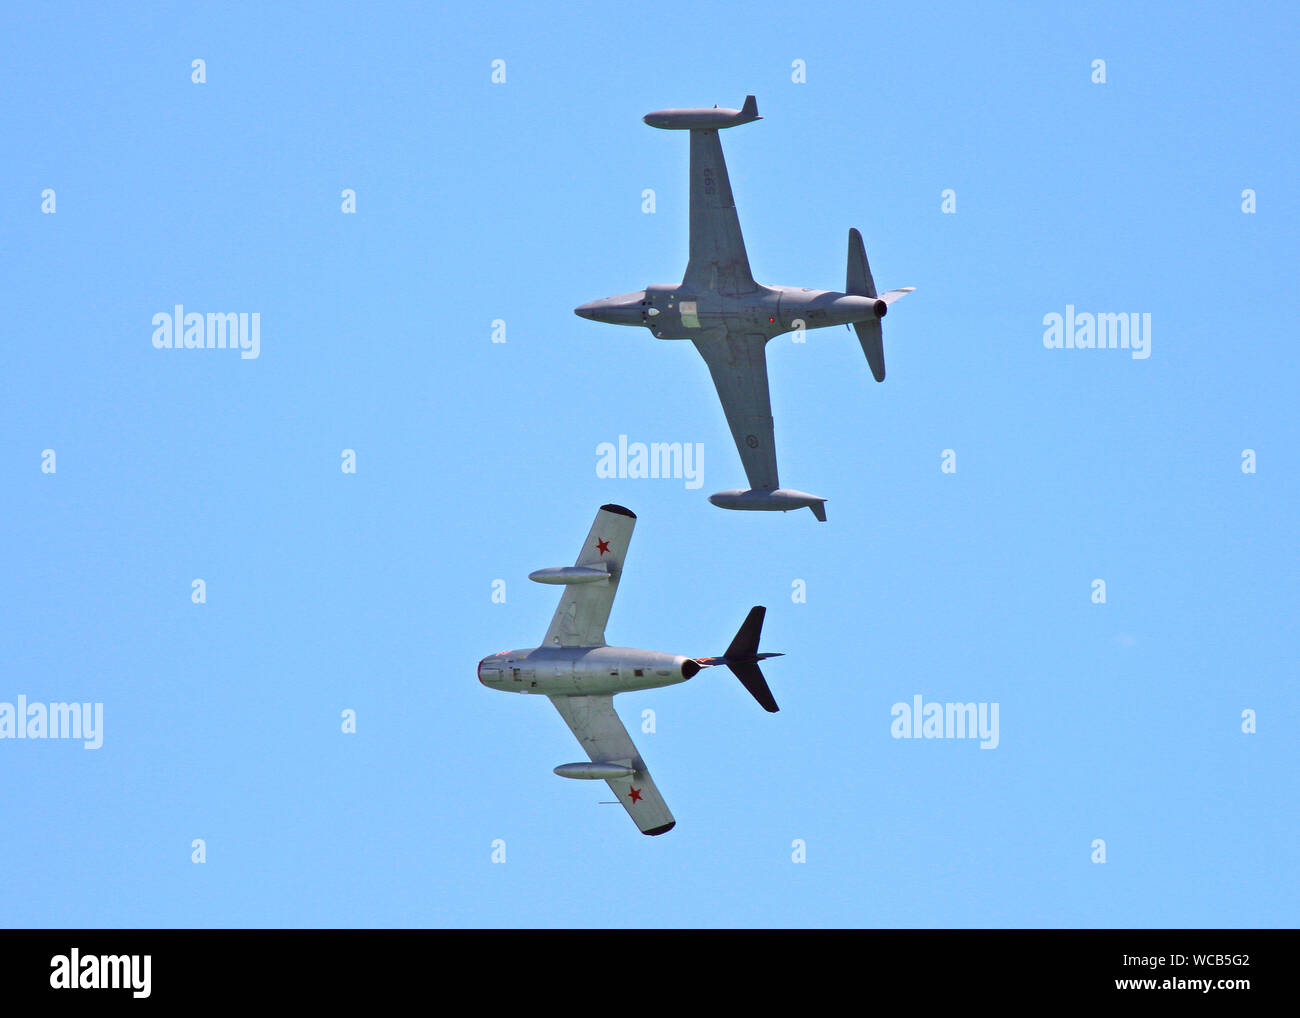 La Norwegian Air Force squadrone storico inviato questi piani a Eastbourne Airshow dell, UK, 2019. La parte superiore dell' immagine un T-33 Shooting Star, al di sotto di un Mig-15. Foto Stock